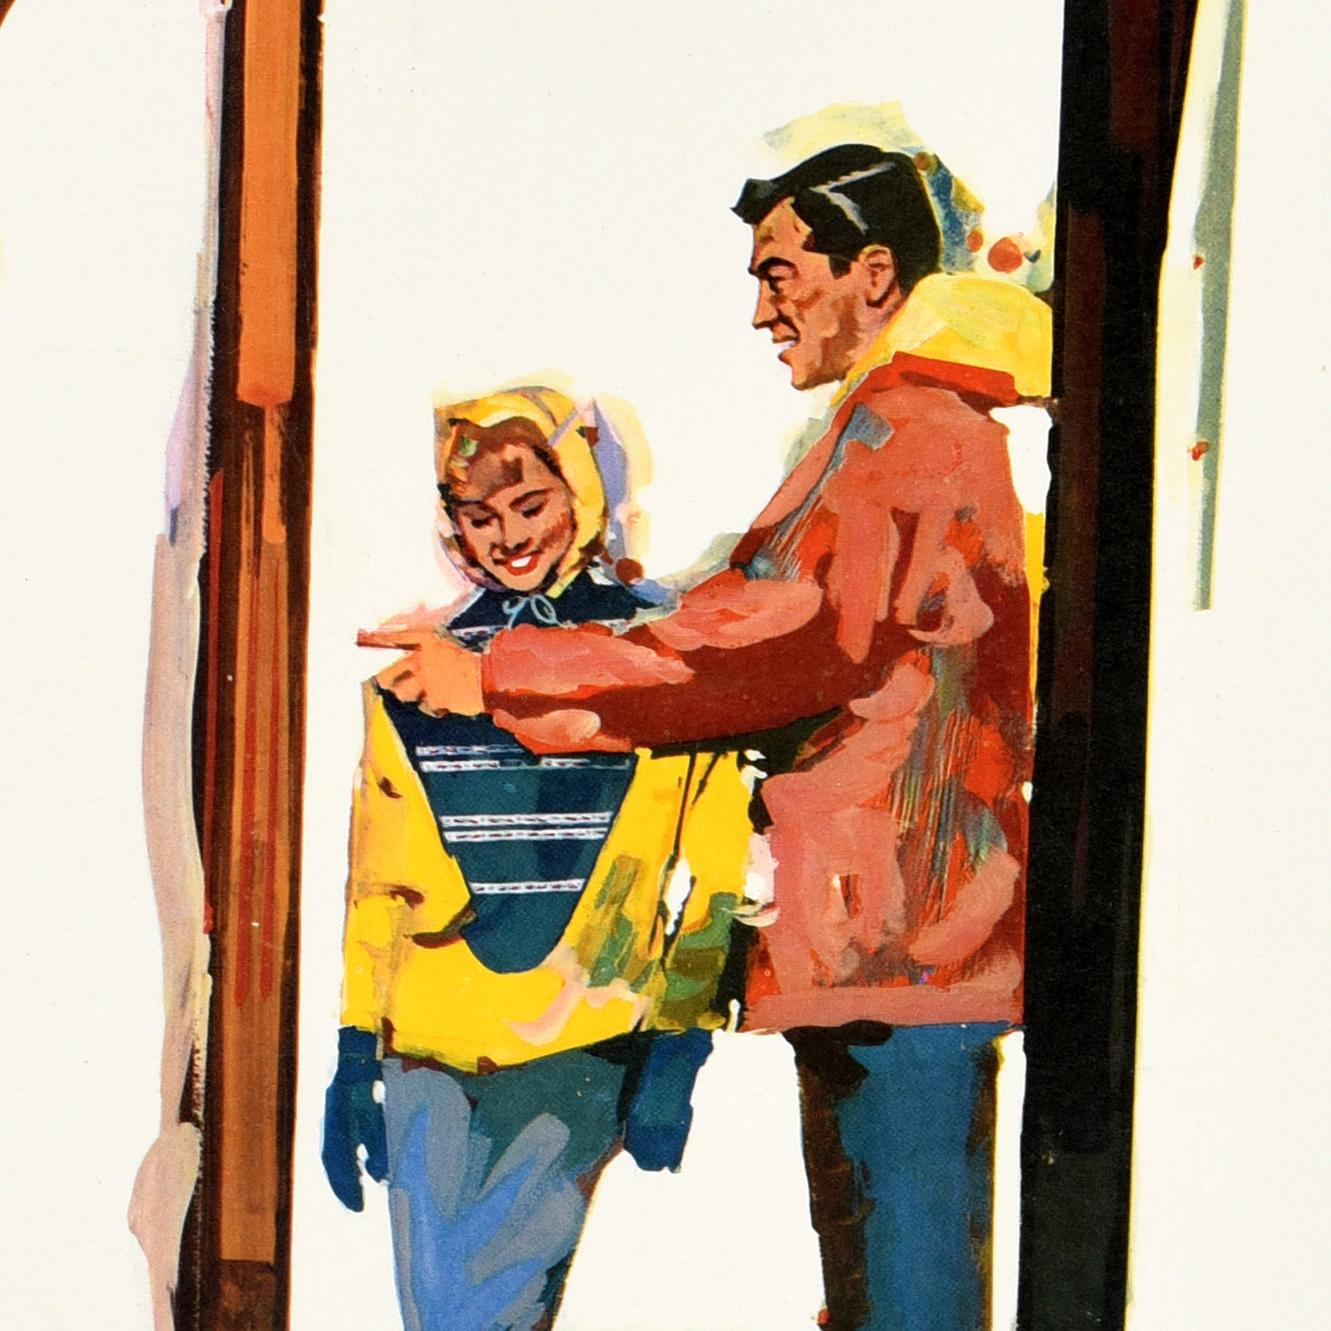 Original-Wintersport-Reiseplakat mit Werbung für das Skigebiet Sun Valley in Idaho, das der Union Pacific Railroad gehört und von ihr betrieben wird (1936-1964). Das farbenfrohe Werk des amerikanischen Künstlers William Willmarth (1898-1984) zeigt